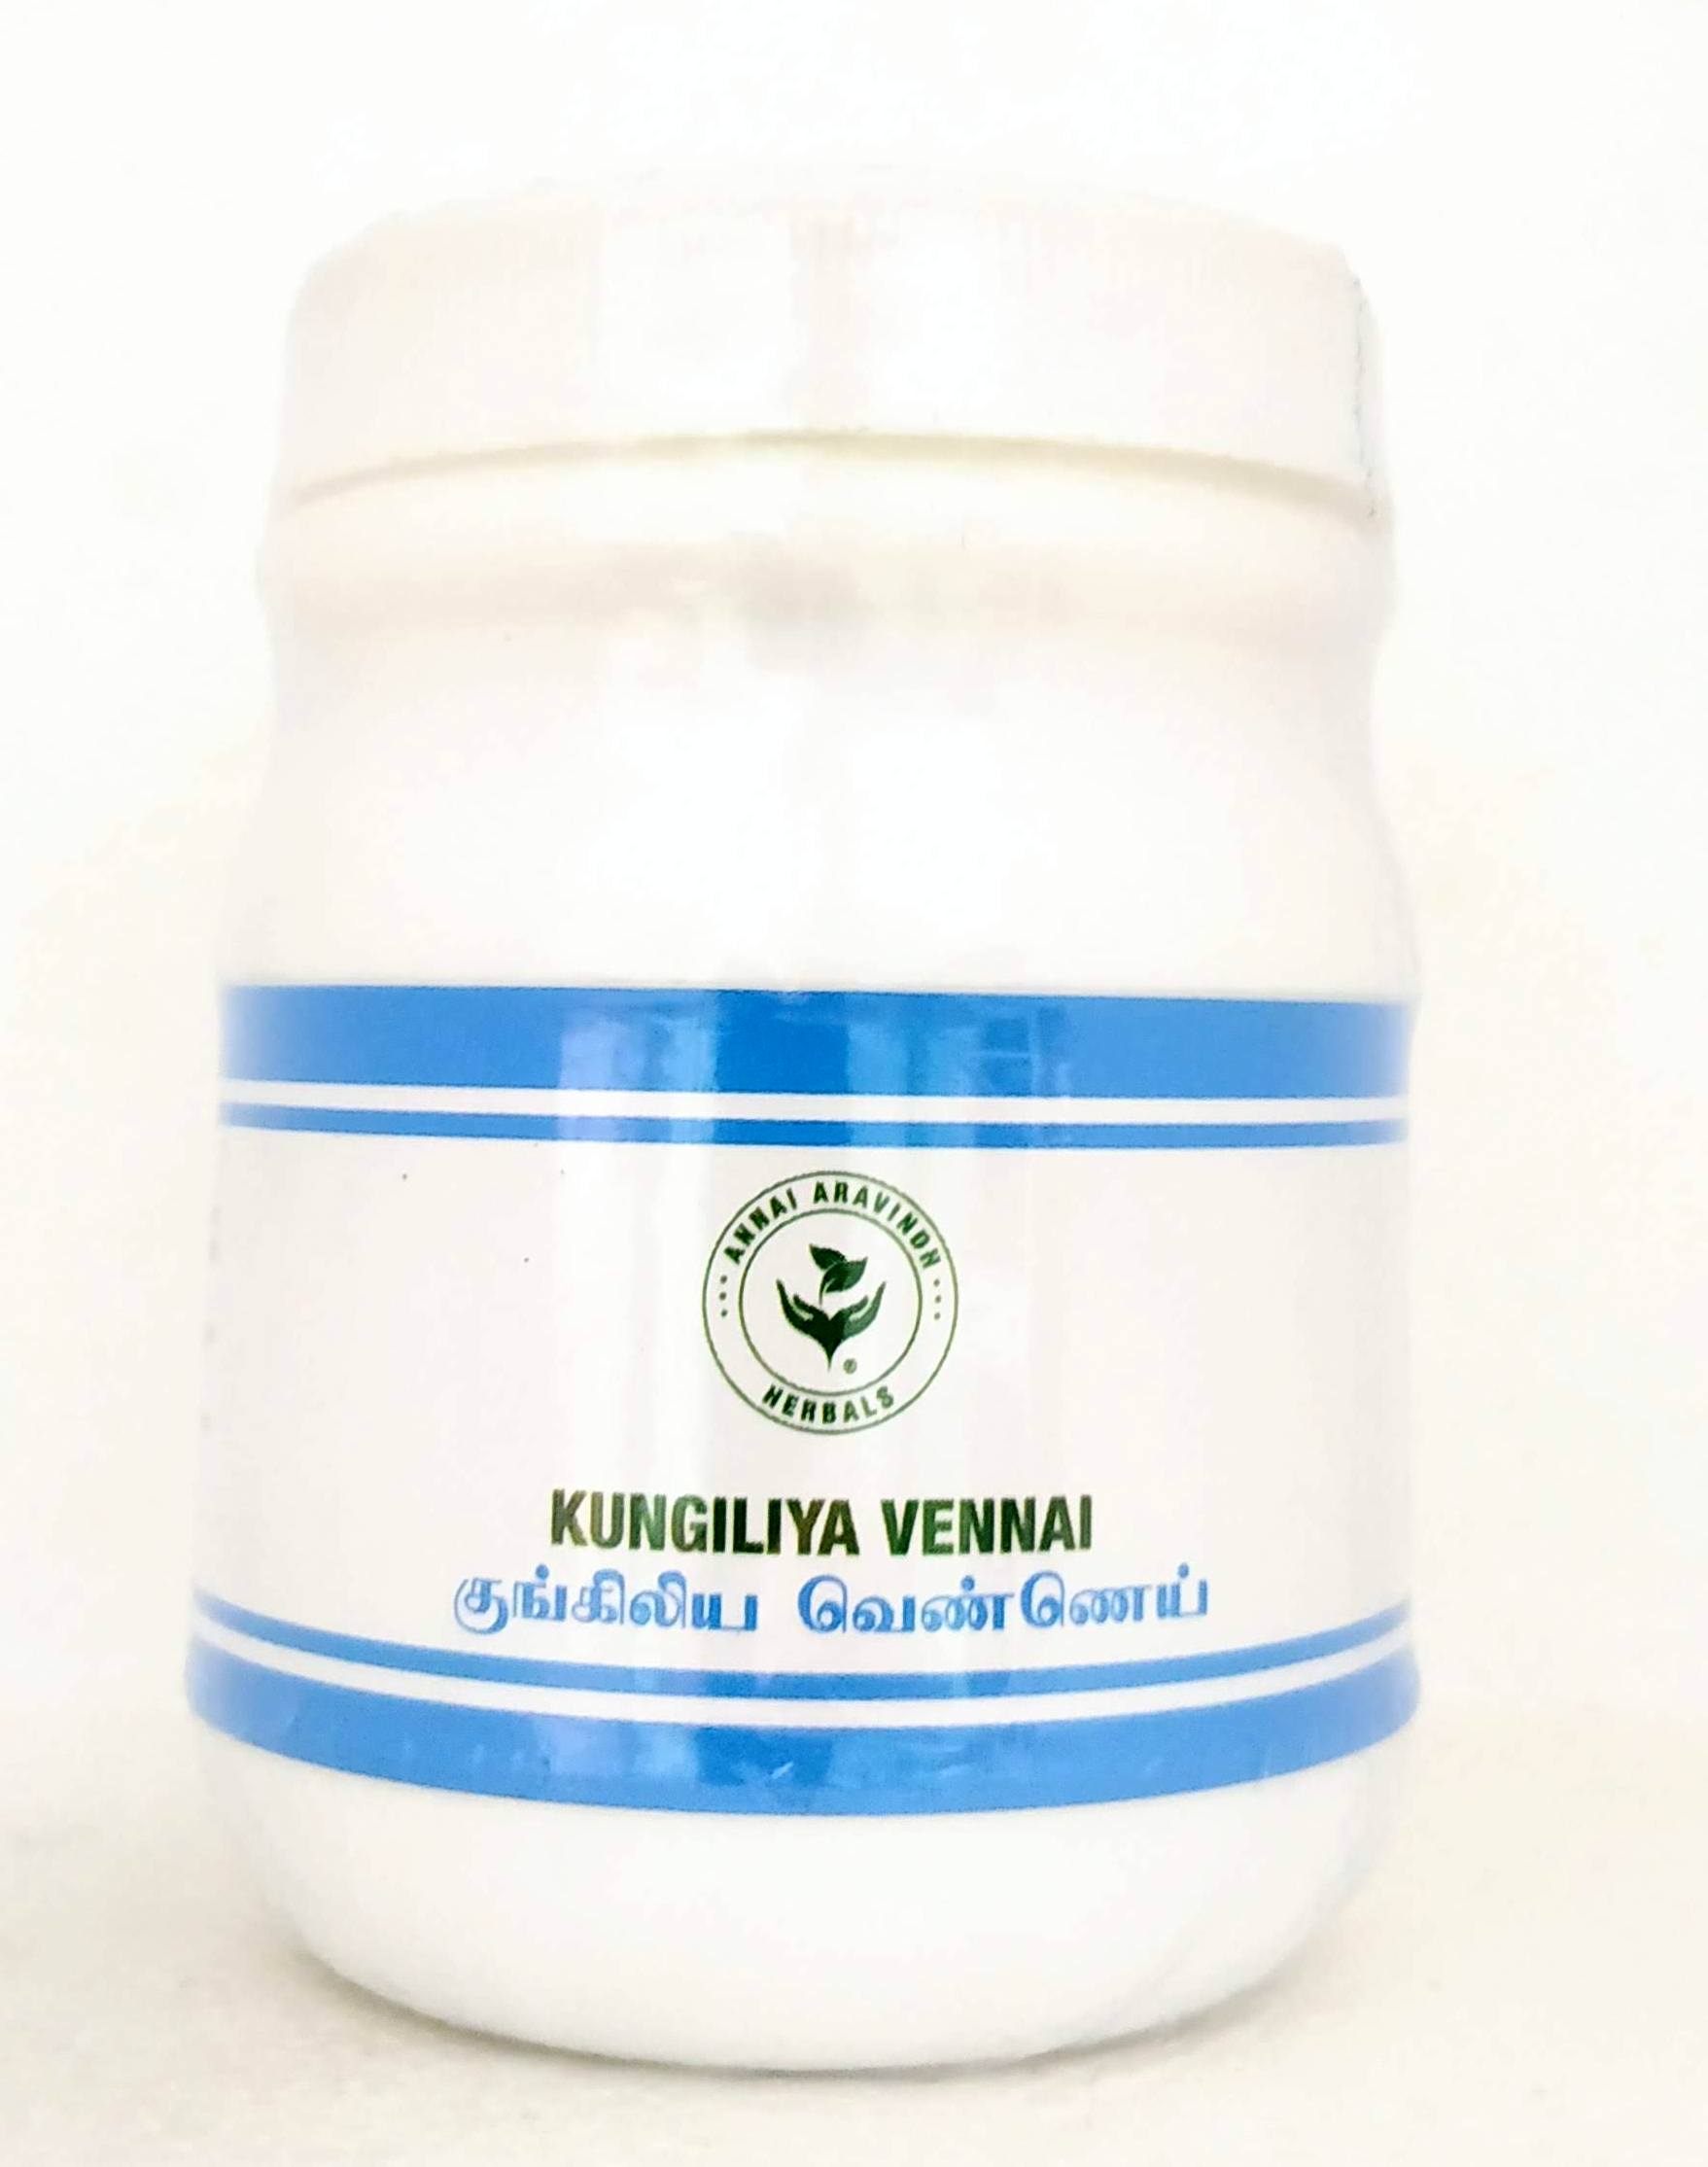 Shop Kungiliya vennai 100gm at price 50.00 from Annai Aravindh Online - Ayush Care